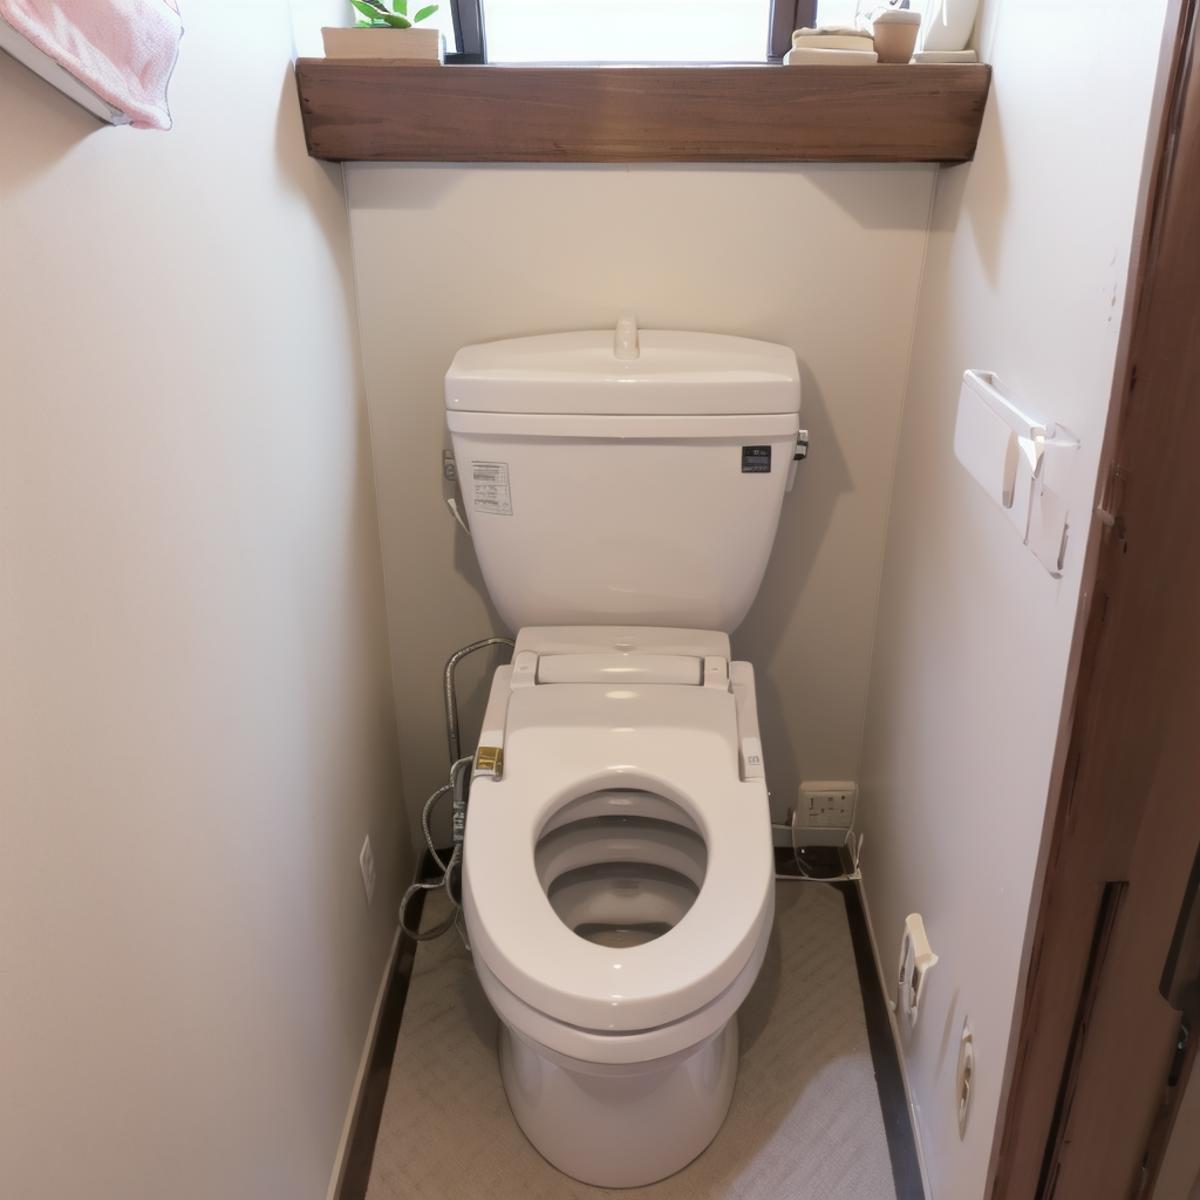 日本の住宅のトイレ Toilets in Japanese Houses SD15 image by swingwings